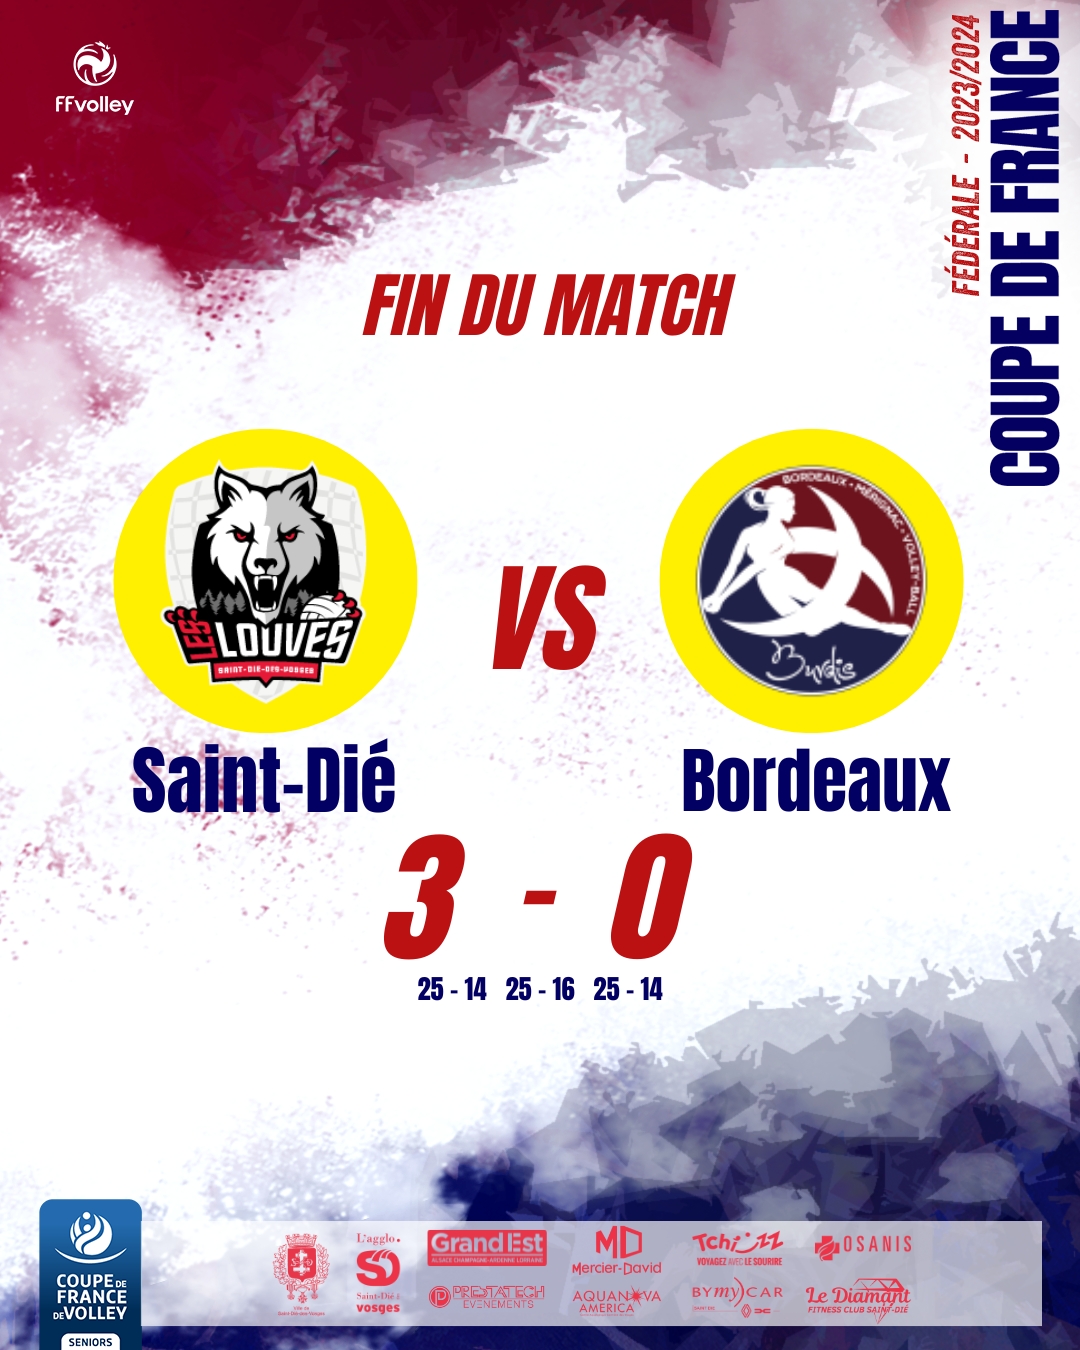 La Coupe de France Seniore de Volley pour les Louves de Saint-Dié face aux Burdis de Bordeaux Mérignac